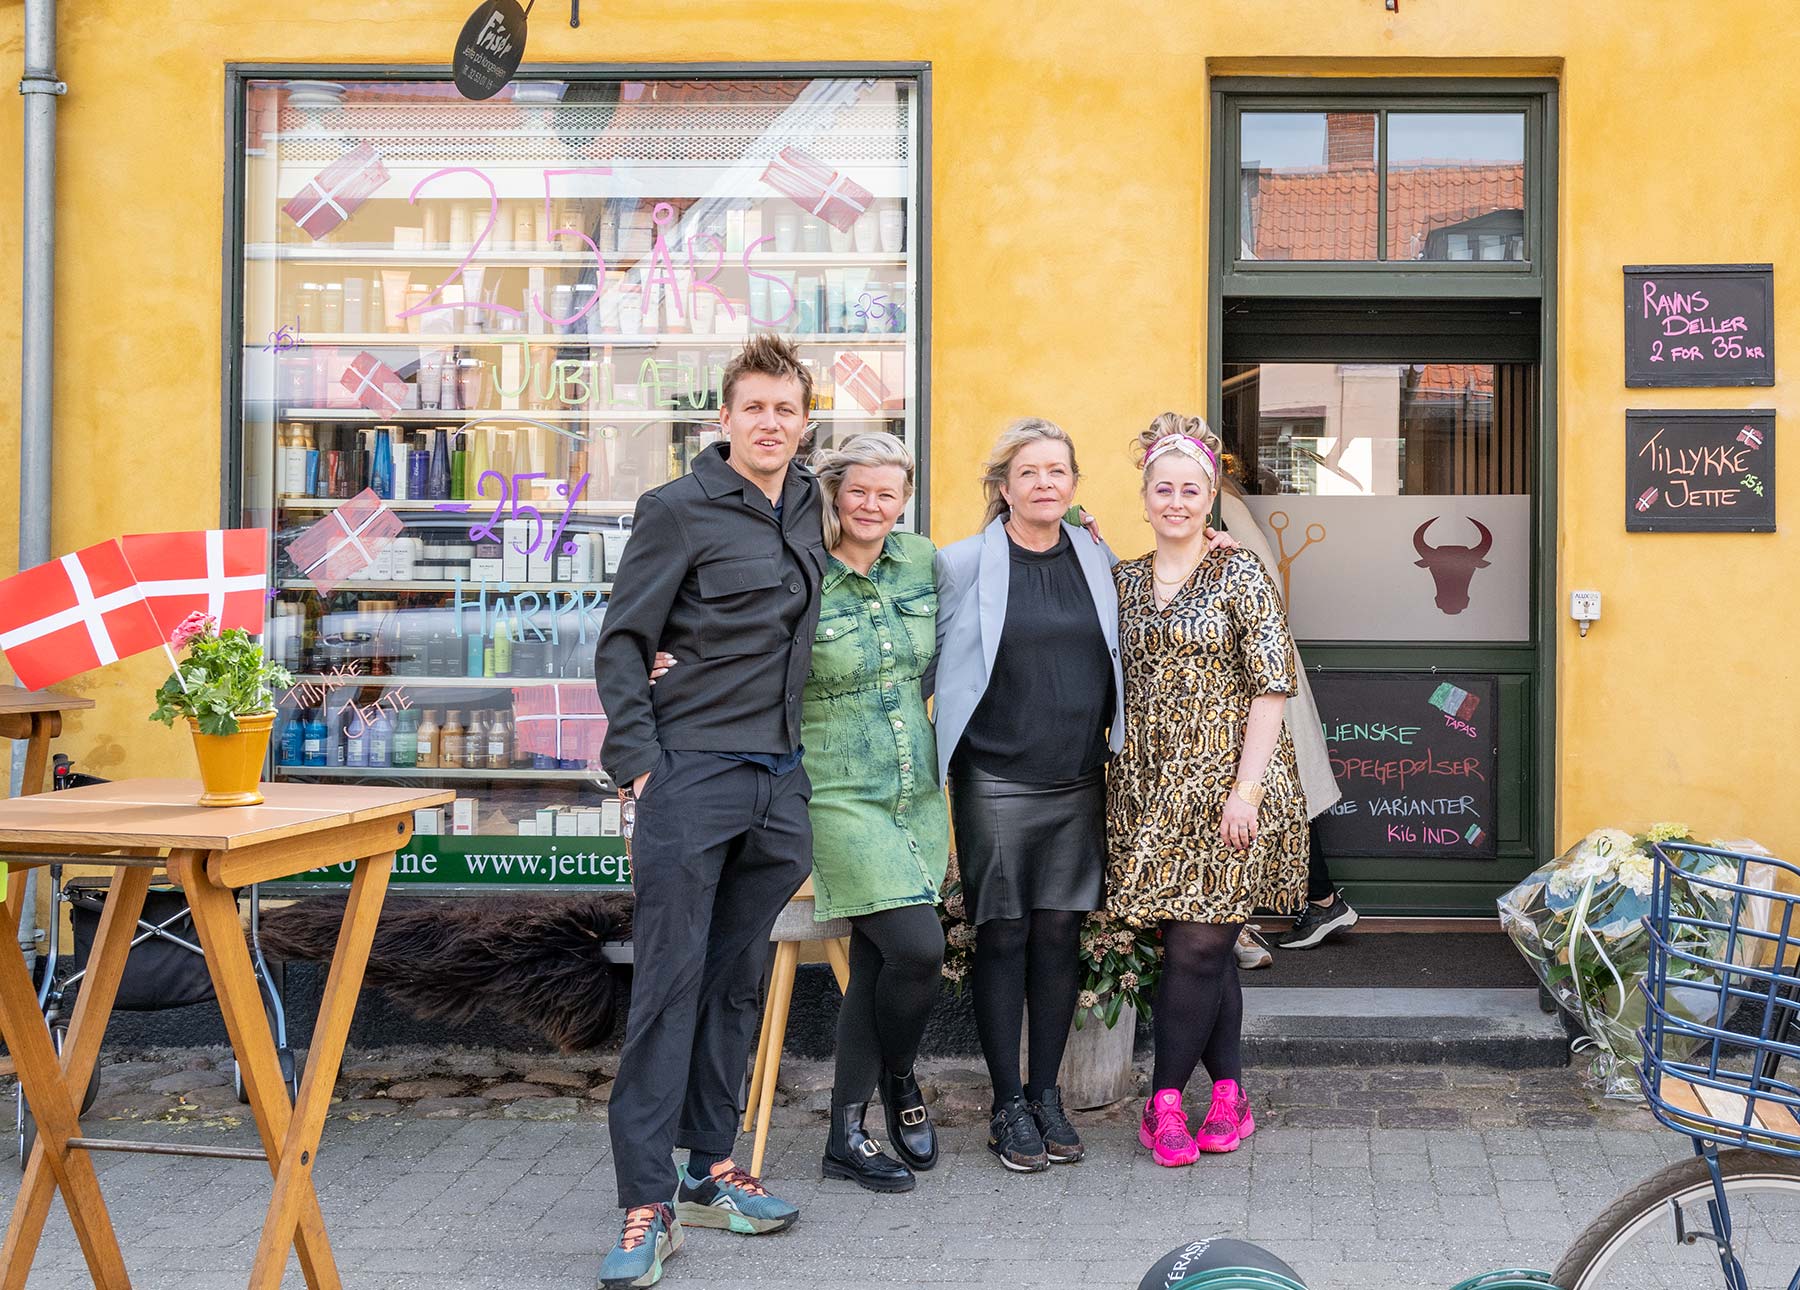 Lørdag den 29. april kunne Jette Ravn (nr. 3 fra venstre) fejre sit 25-års-jubilæum som frisør i Dragør med en særdeles velbesøgt reception. Foto: TorbenStender.